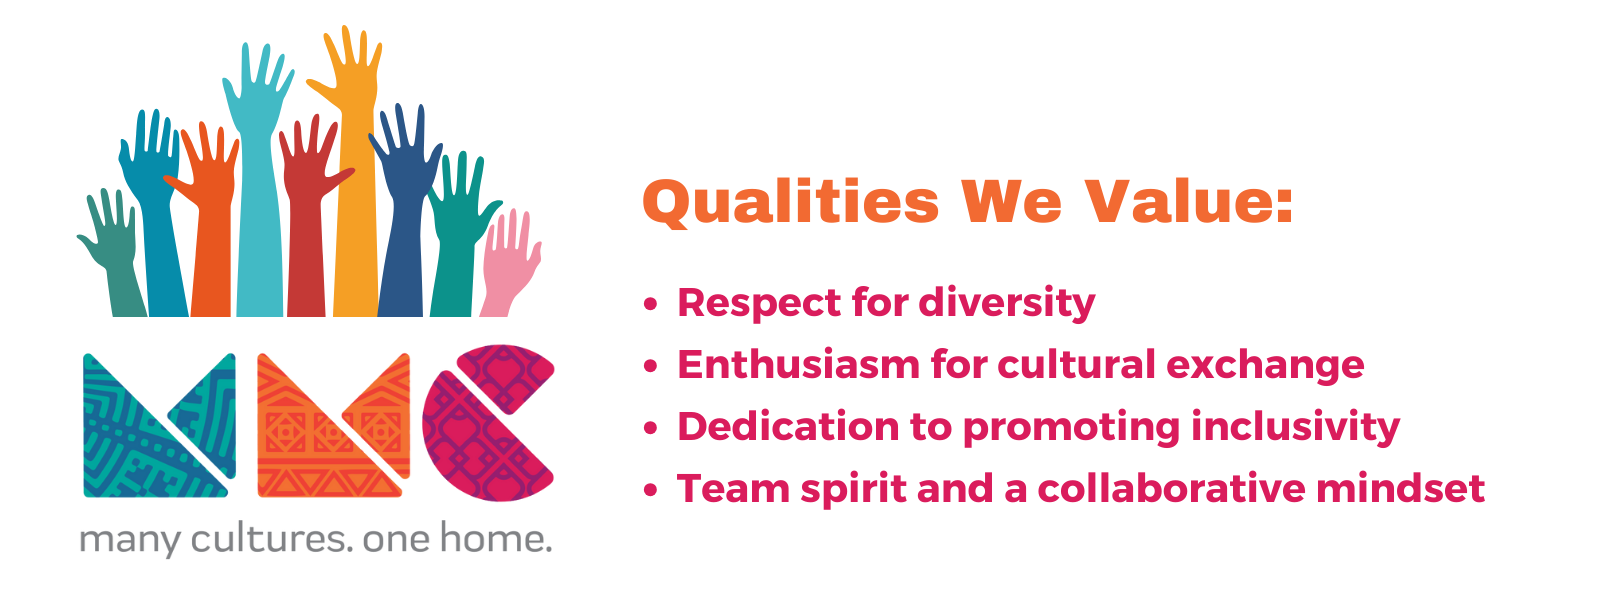 Qualities we value